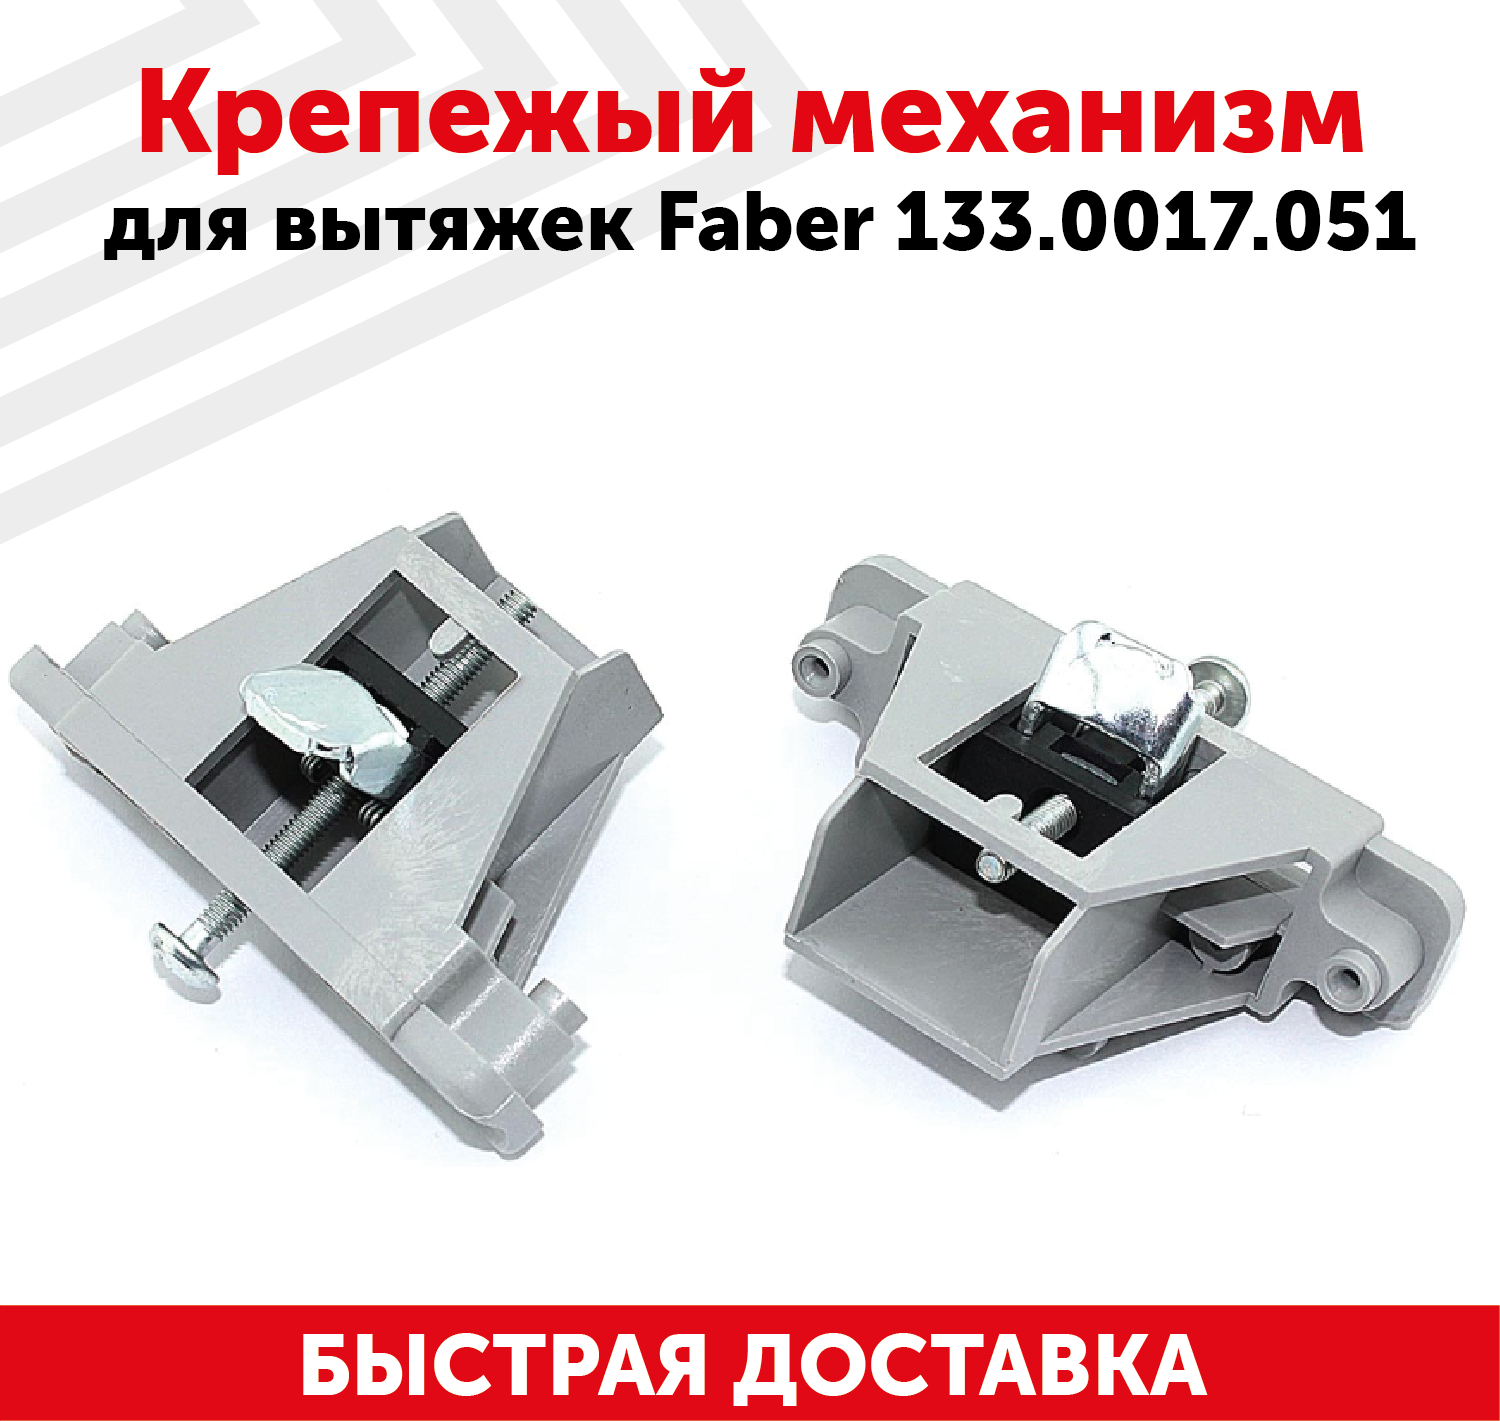 Крепежый механизм для кухонных вытяжек Faber 133.0017.051